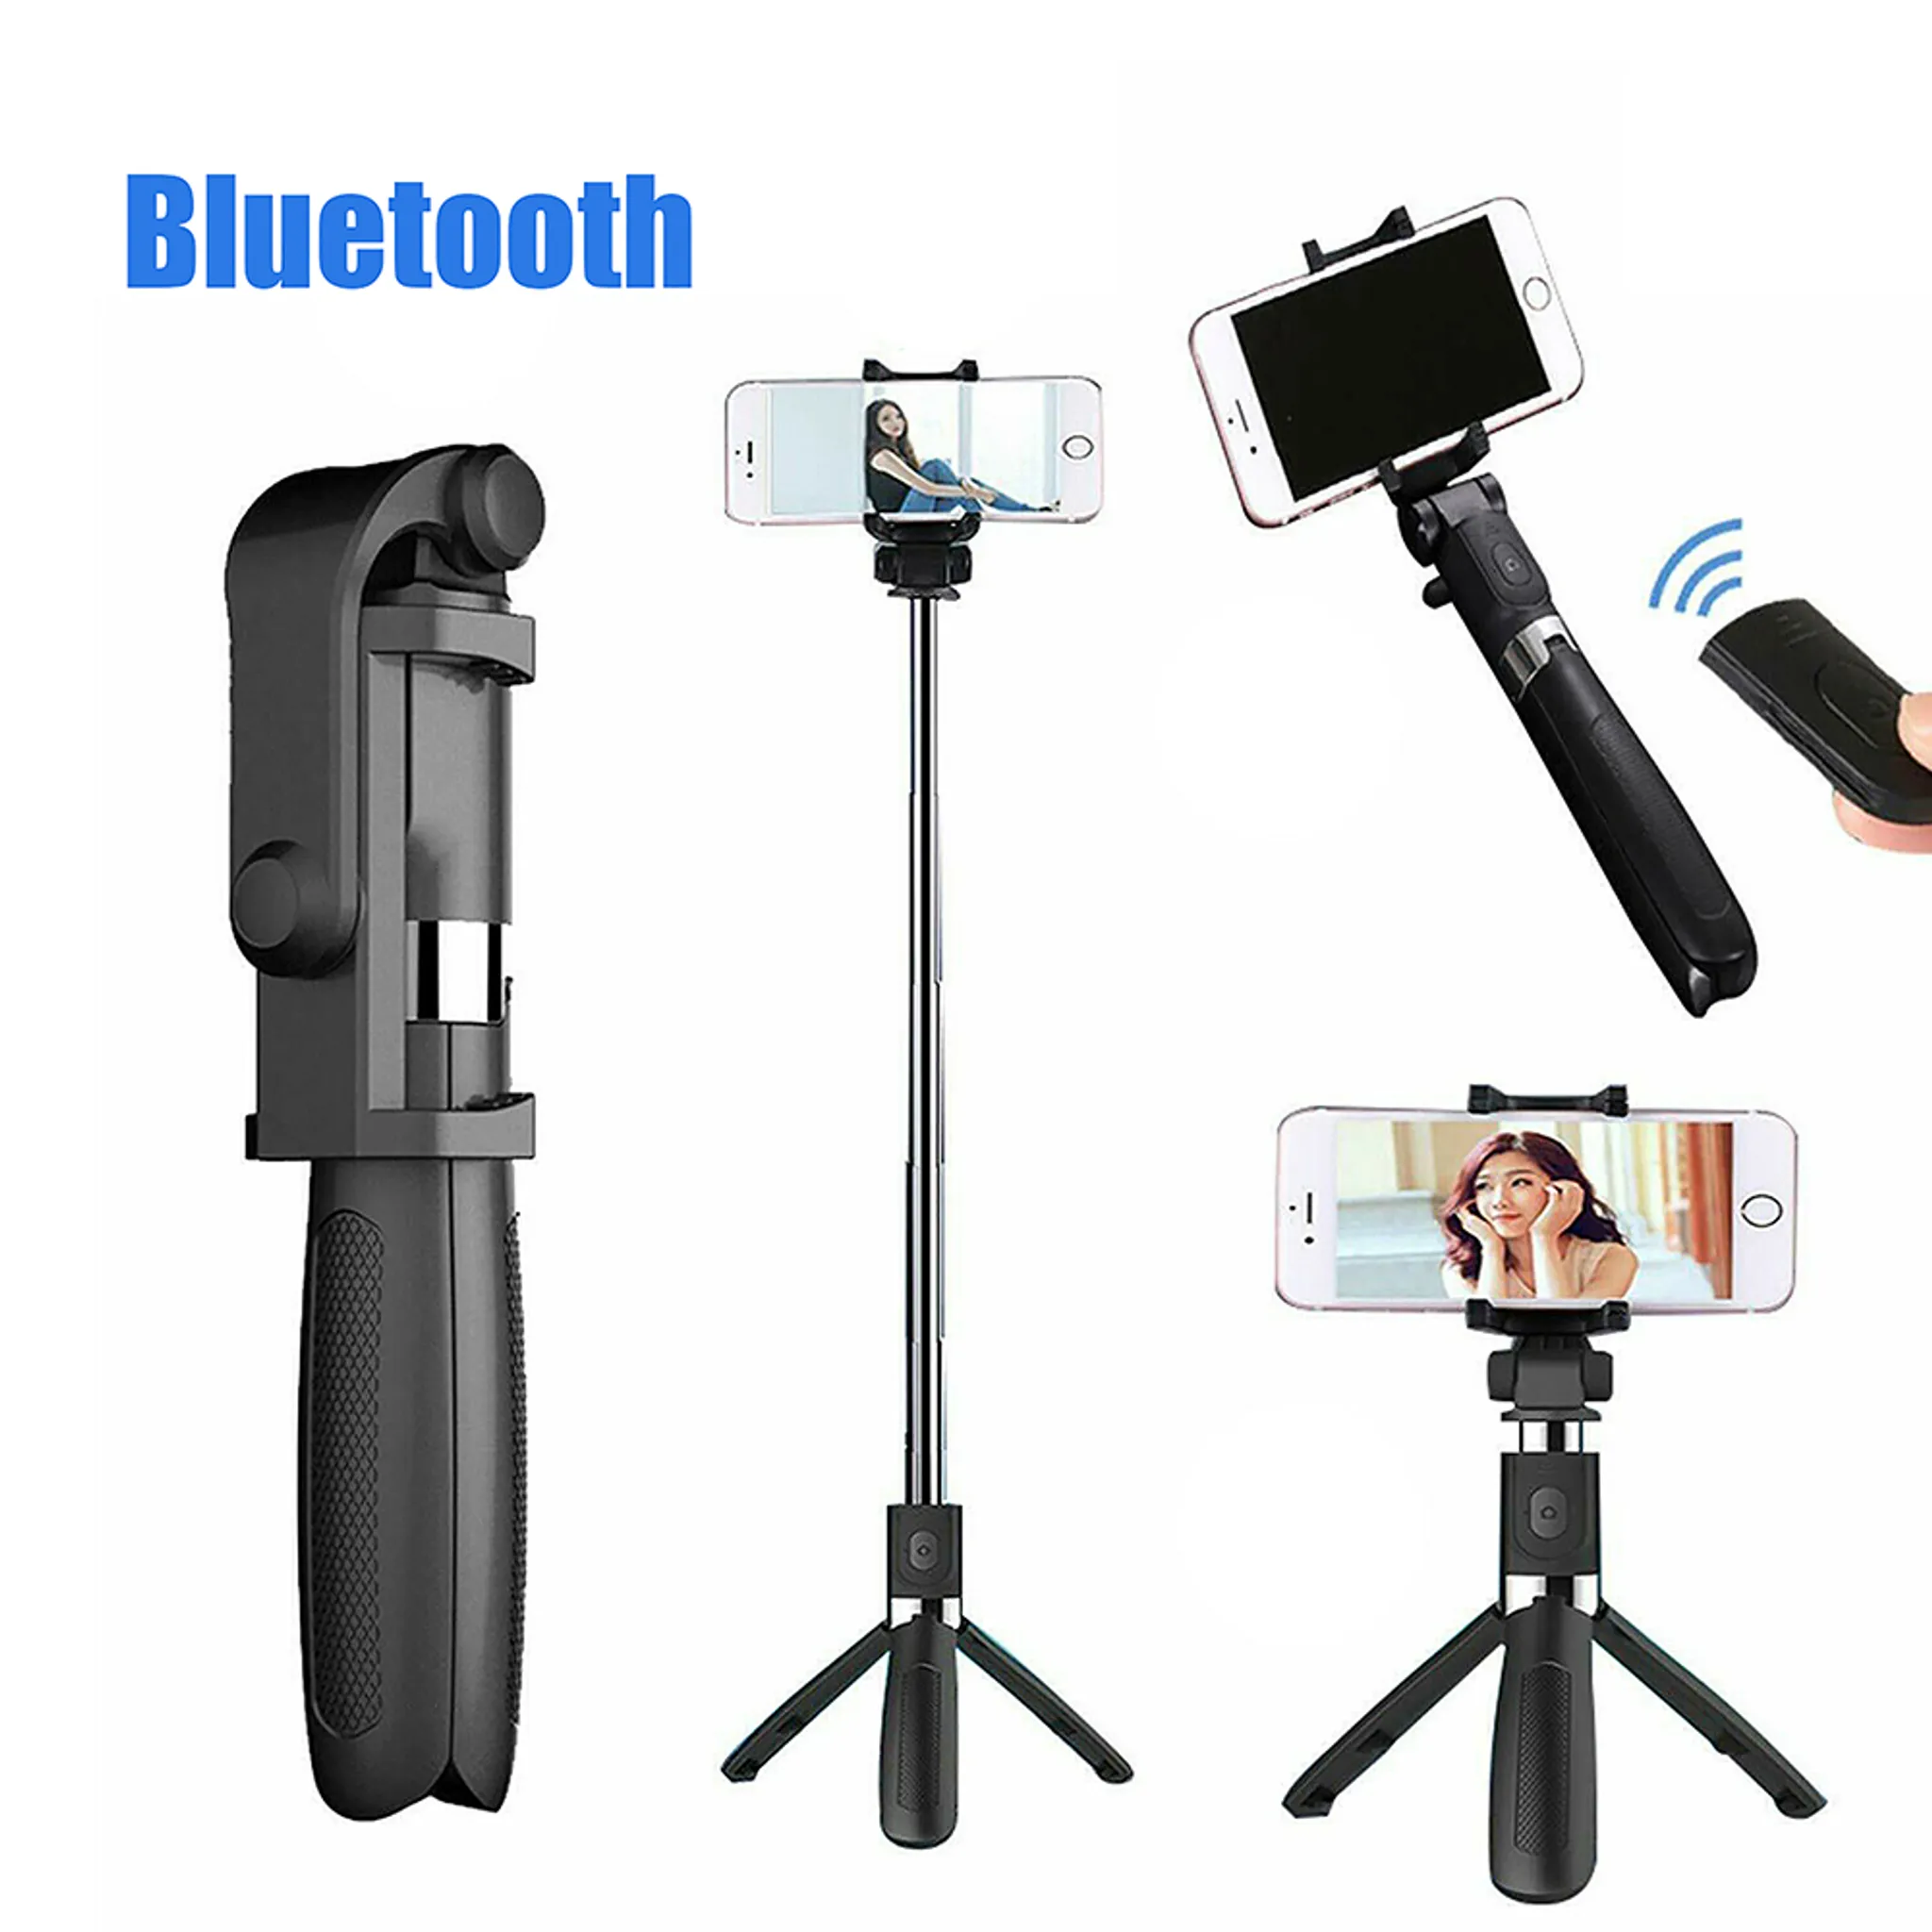 3 in 1 Wireless Selfie Stange mit Abnehmbarer Funkfernbedienung für iPhone Android Samsung Smartphones Gopro Kamera KKUYI Bluetooth Selfie Stick Stativ 